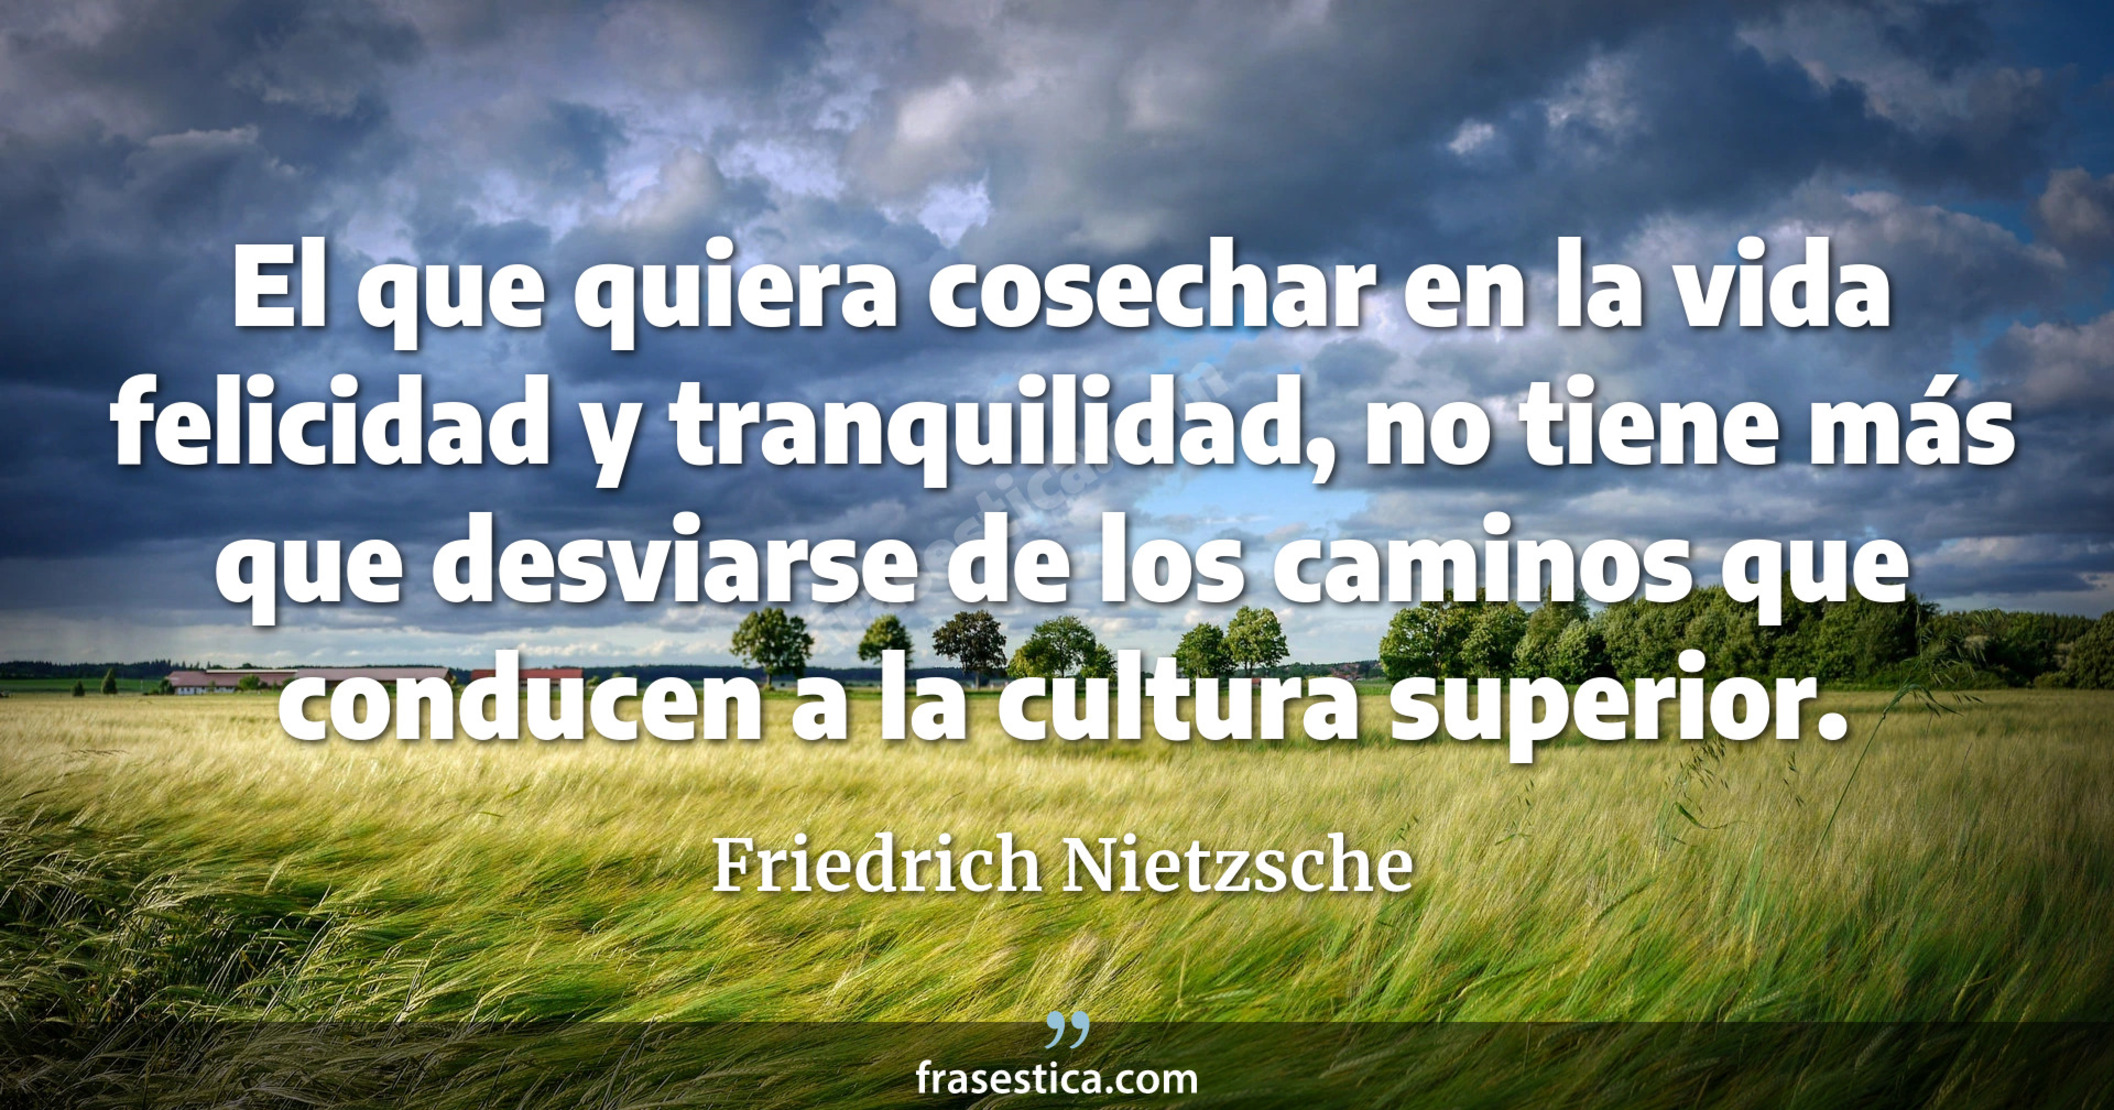 El que quiera cosechar en la vida felicidad y tranquilidad, no tiene más que desviarse de los caminos que conducen a la cultura superior. - Friedrich Nietzsche